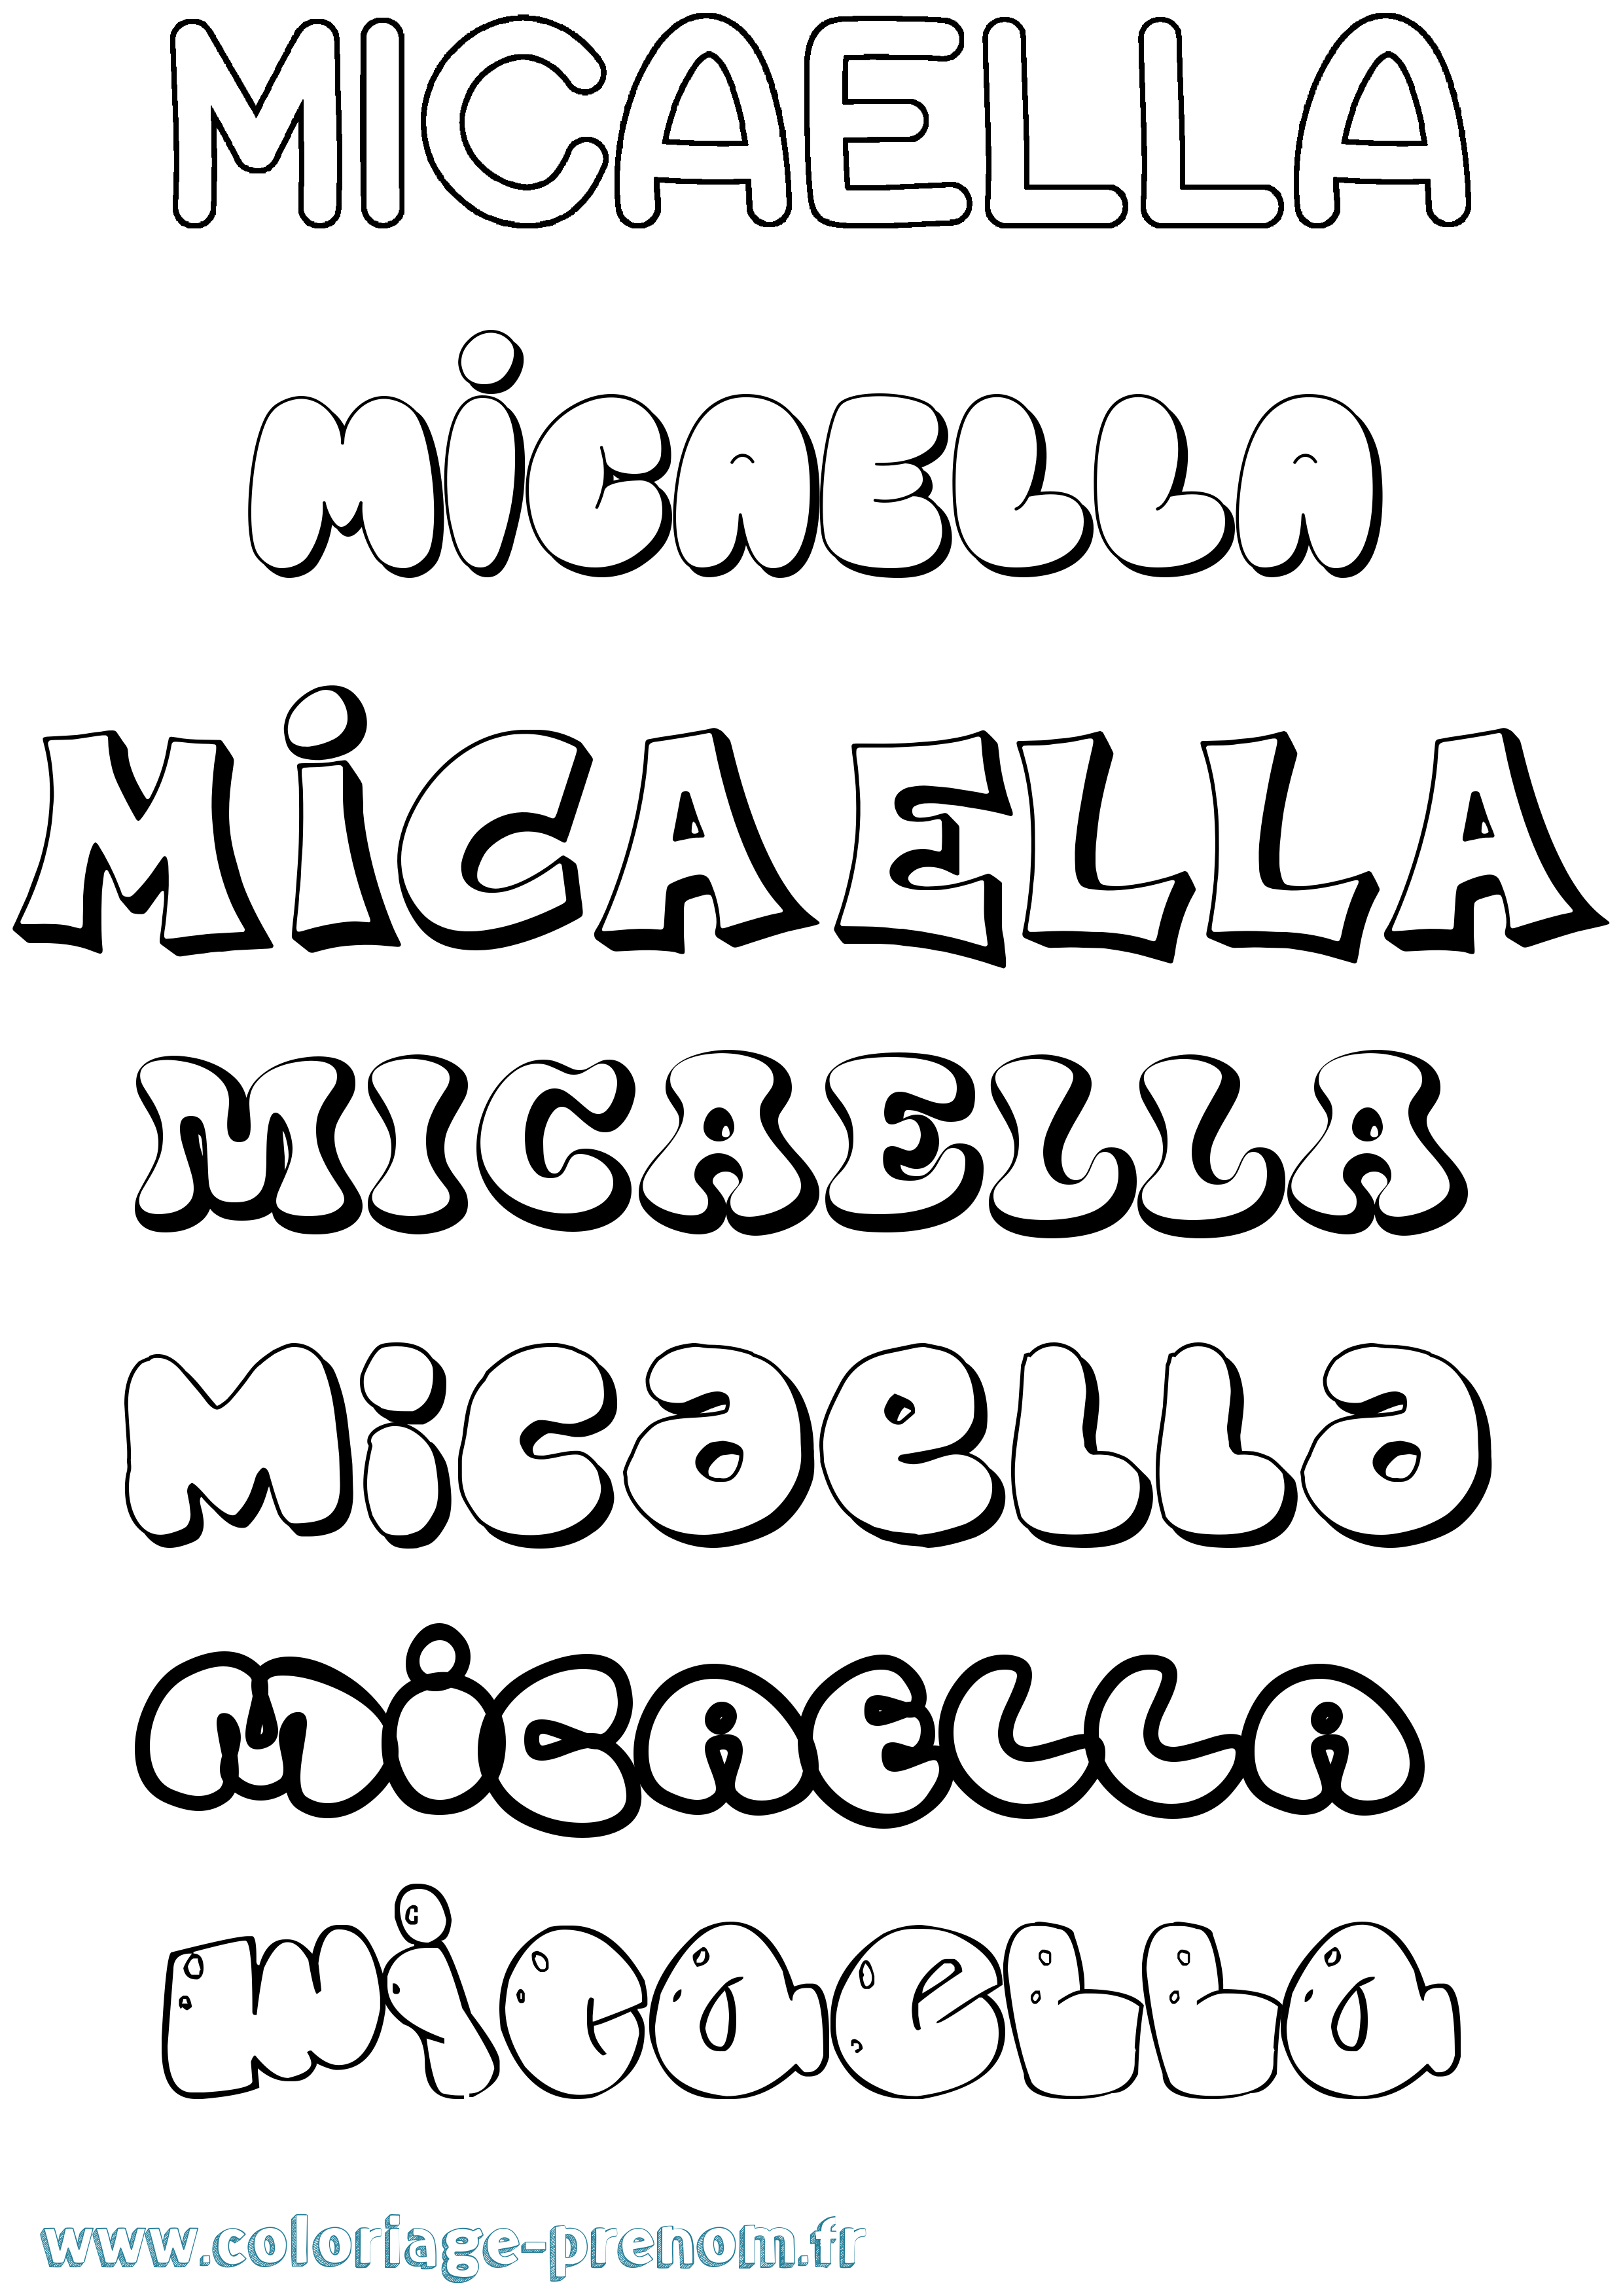 Coloriage prénom Micaella Bubble